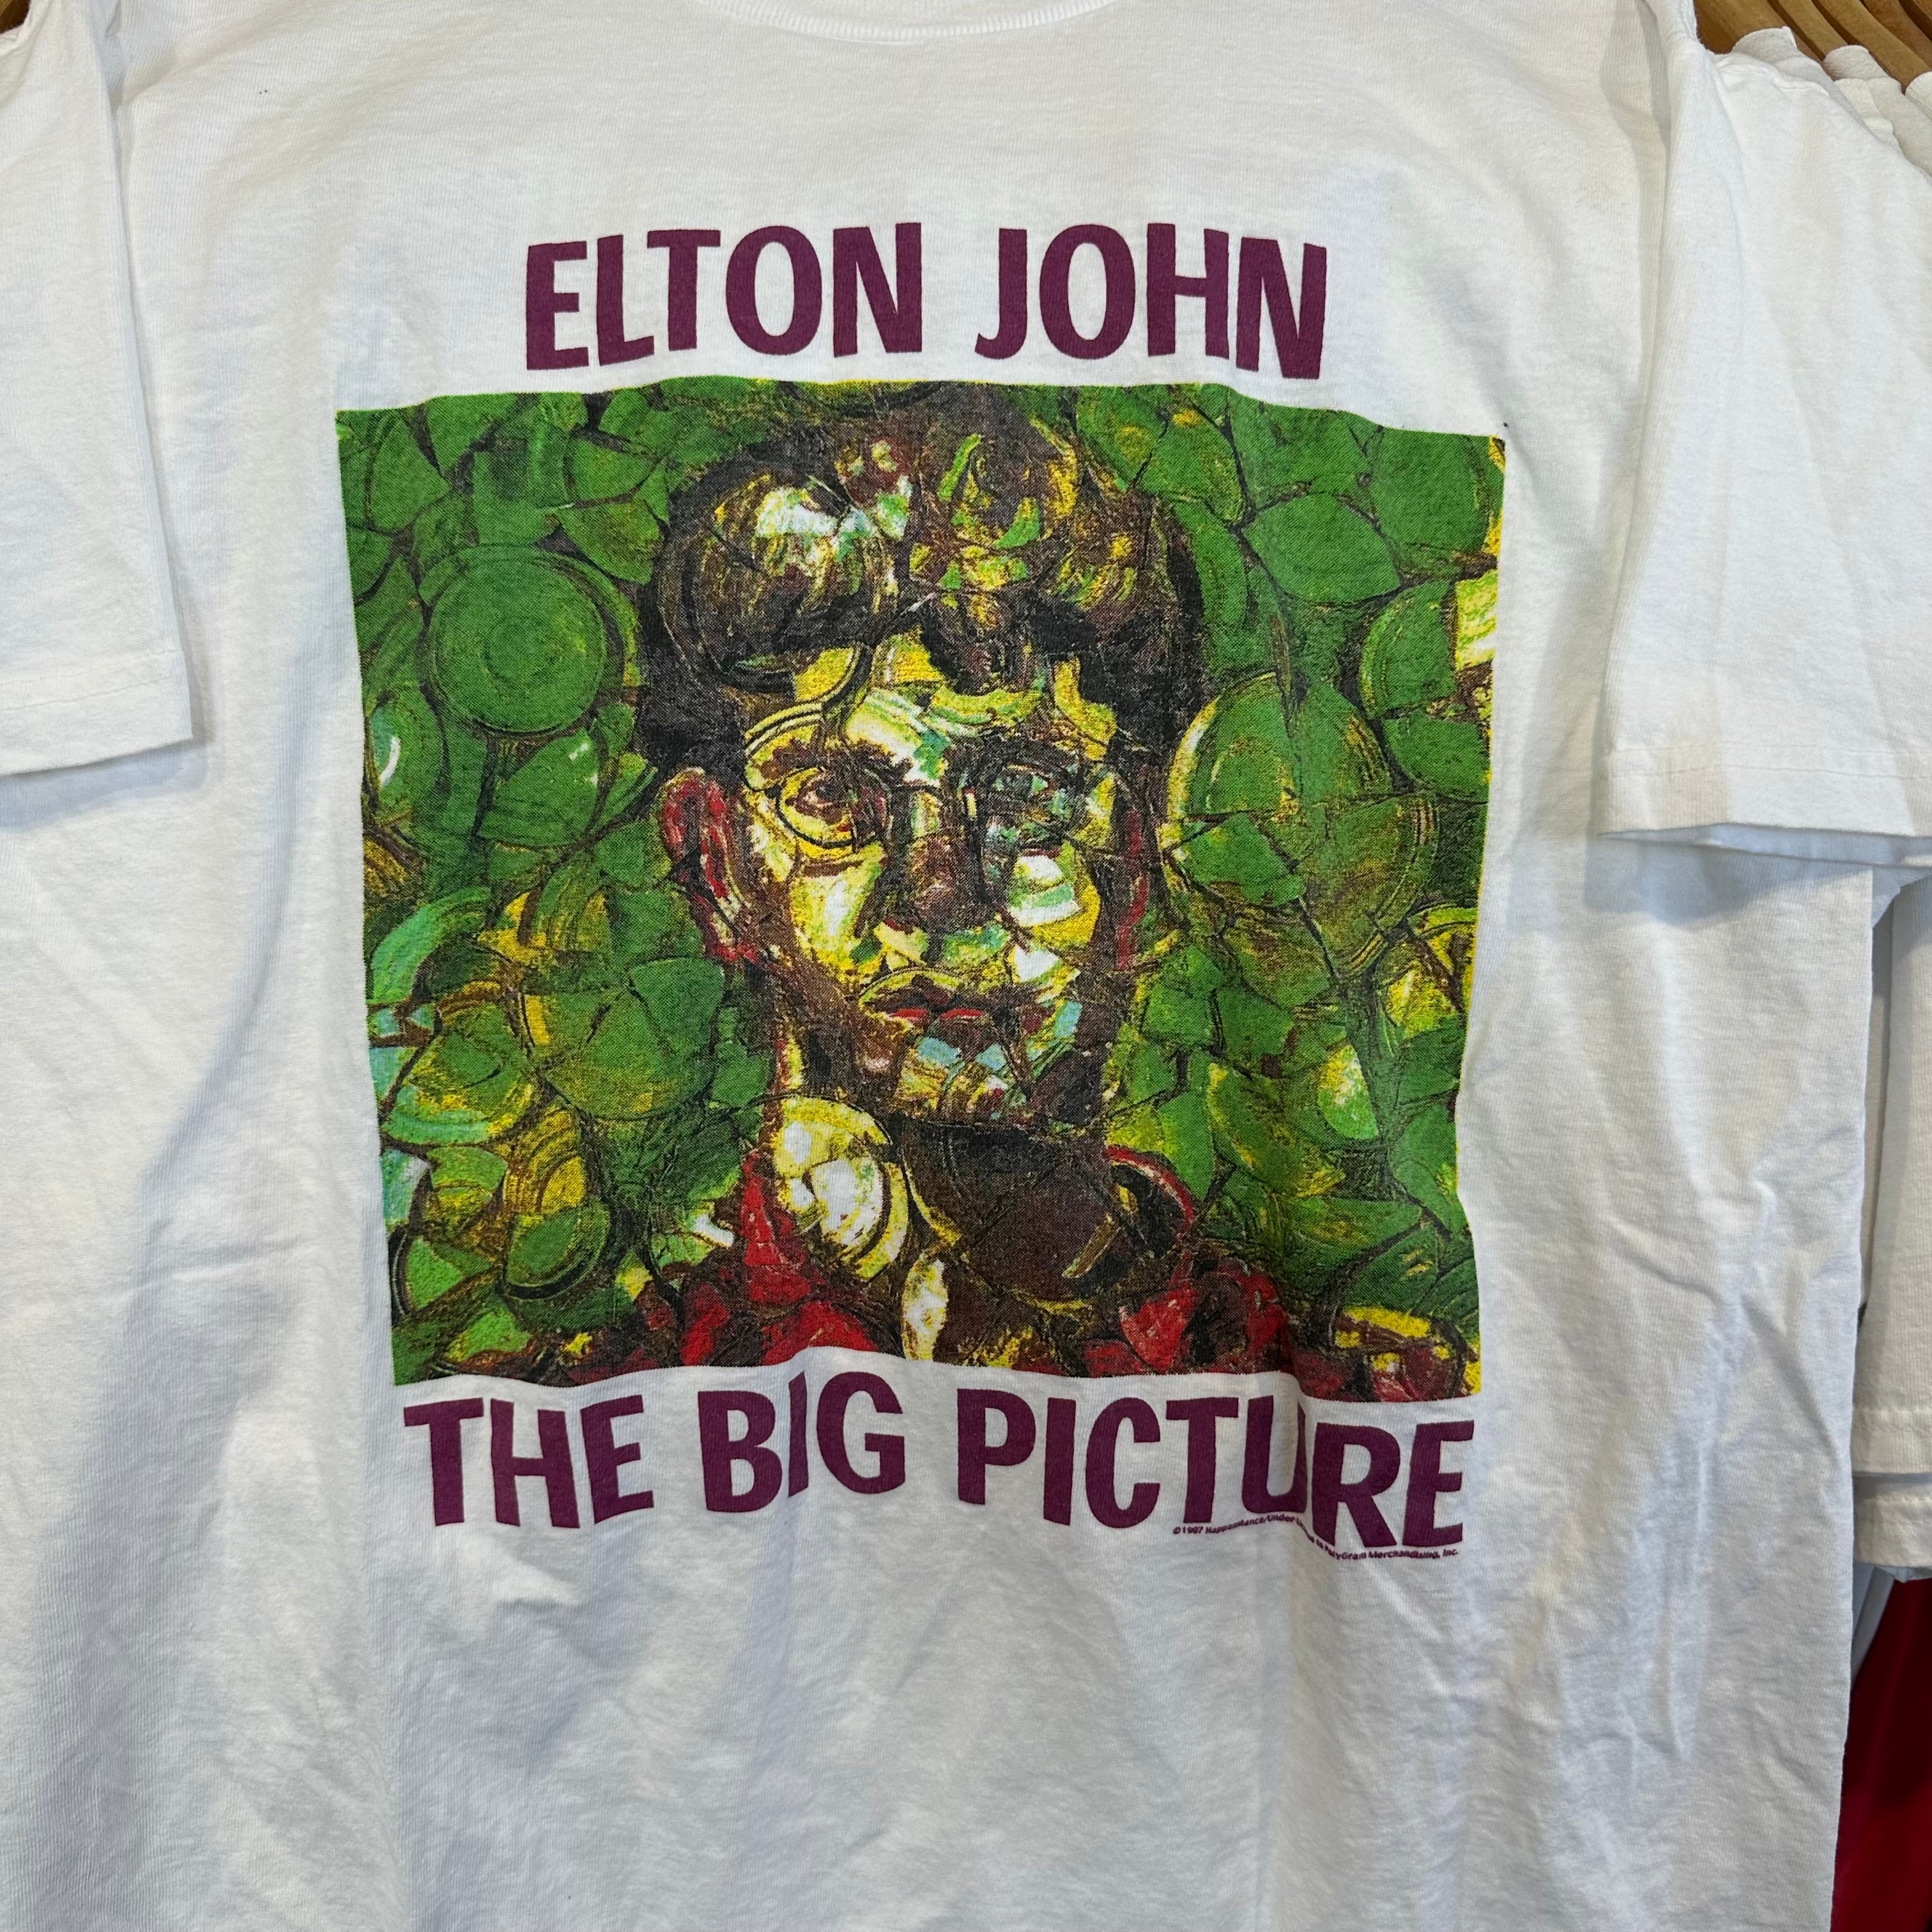 Elton John “The Big Picture” T-Shirt